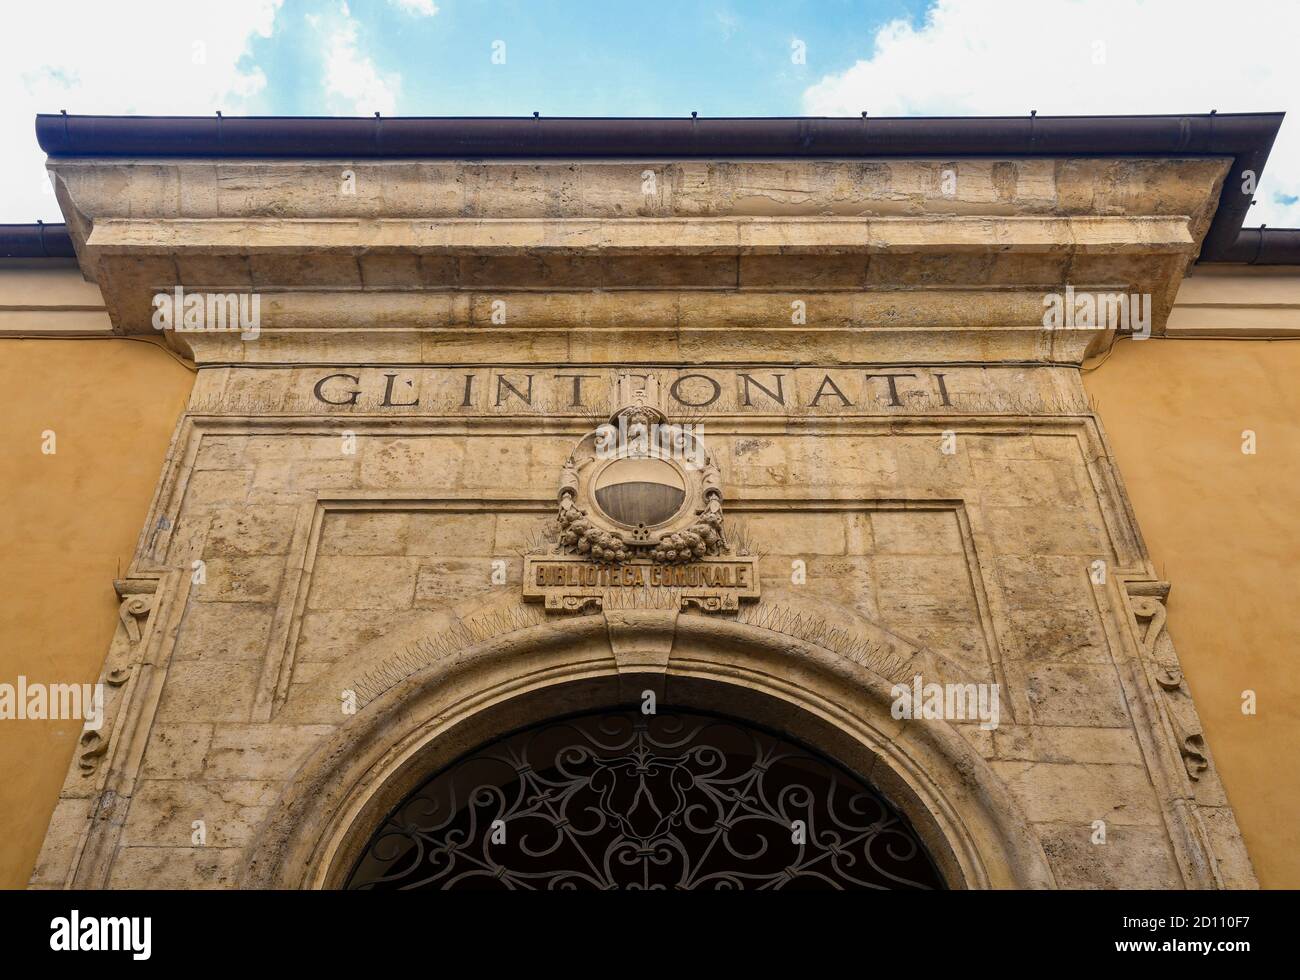 Tacade de la Biblioteca Comunale degli Intronati, une bibliothèque publique historique (1758) située dans la vieille ville de Sienne, UNESCO W.H. Site, Toscane, Italie Banque D'Images